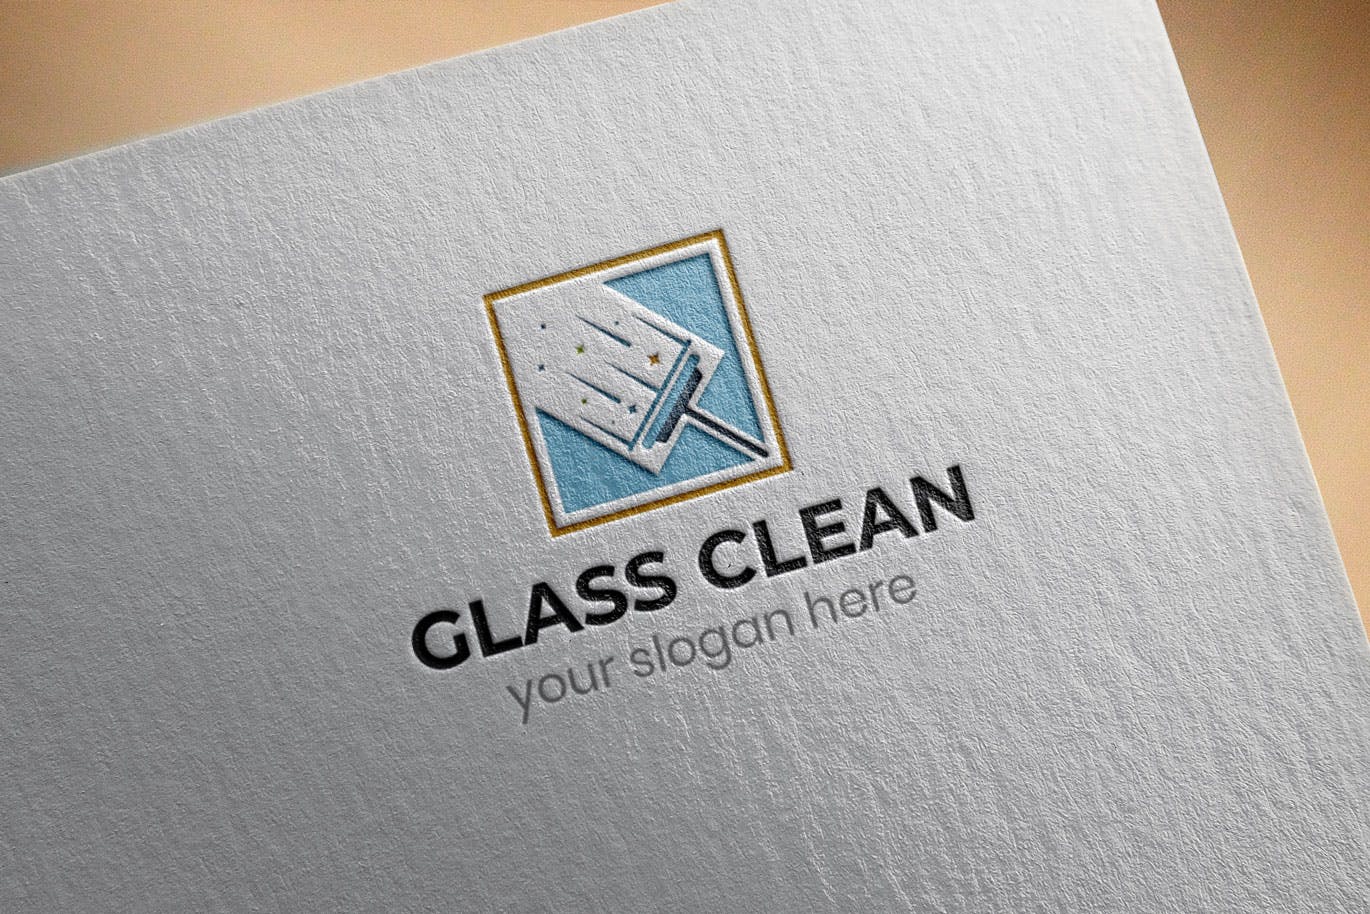 玻璃清洁服务Logo设计素材库精选模板 Glass Clean Business Logo Template插图(2)